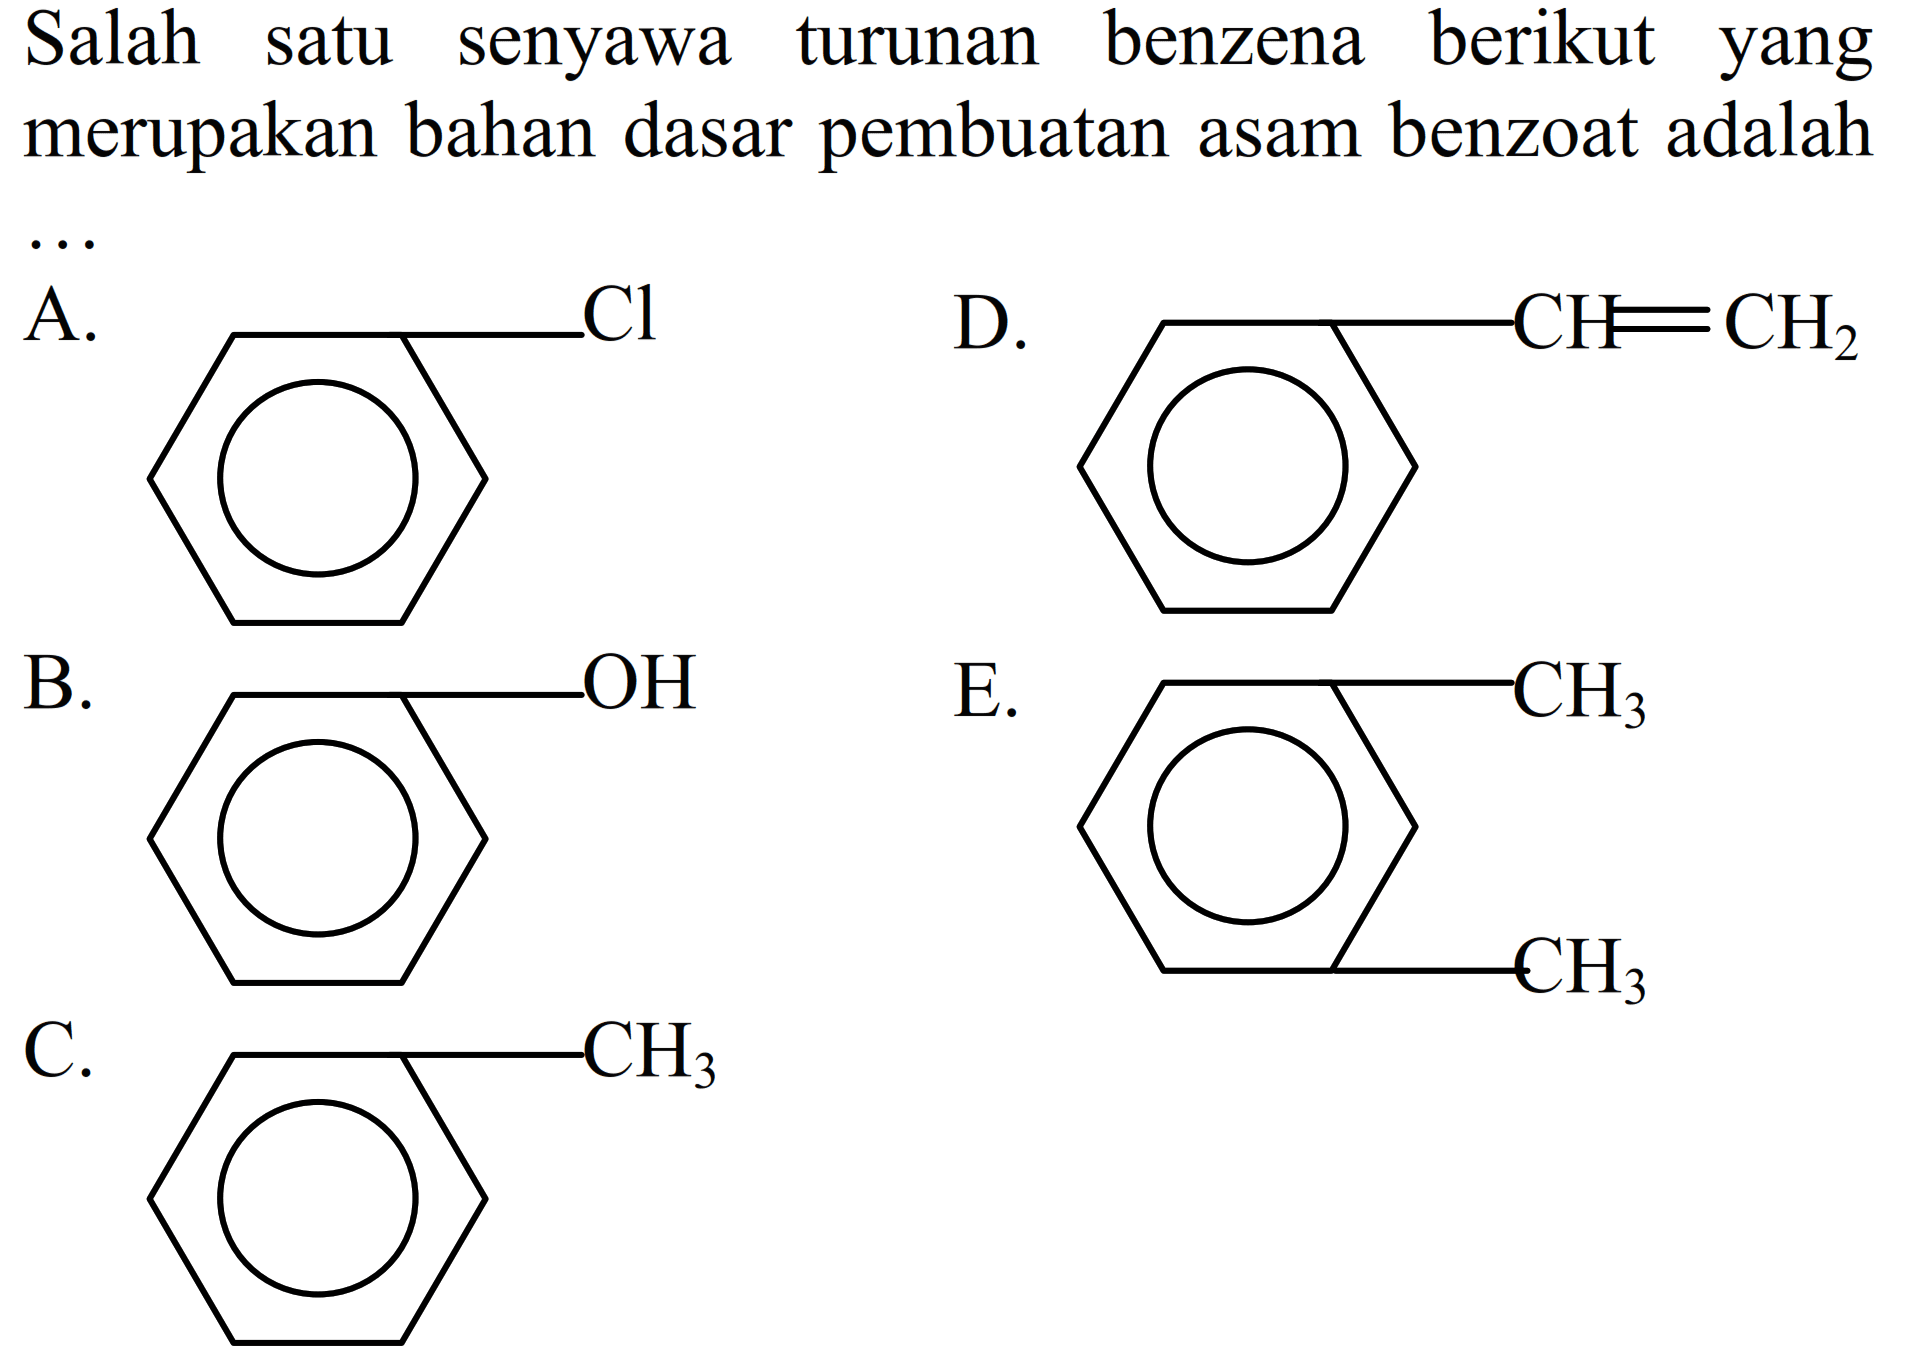 Salah satu senyawa turunan benzena berikut yang merupakan bahan dasar pembuatan asam benzoat adalah
A. Benzena - Cl
D. Benzena - CH = CH2
B. Benzena - OH
E. Benzena - CH3 - CH3 
C. Benzena - CH3 